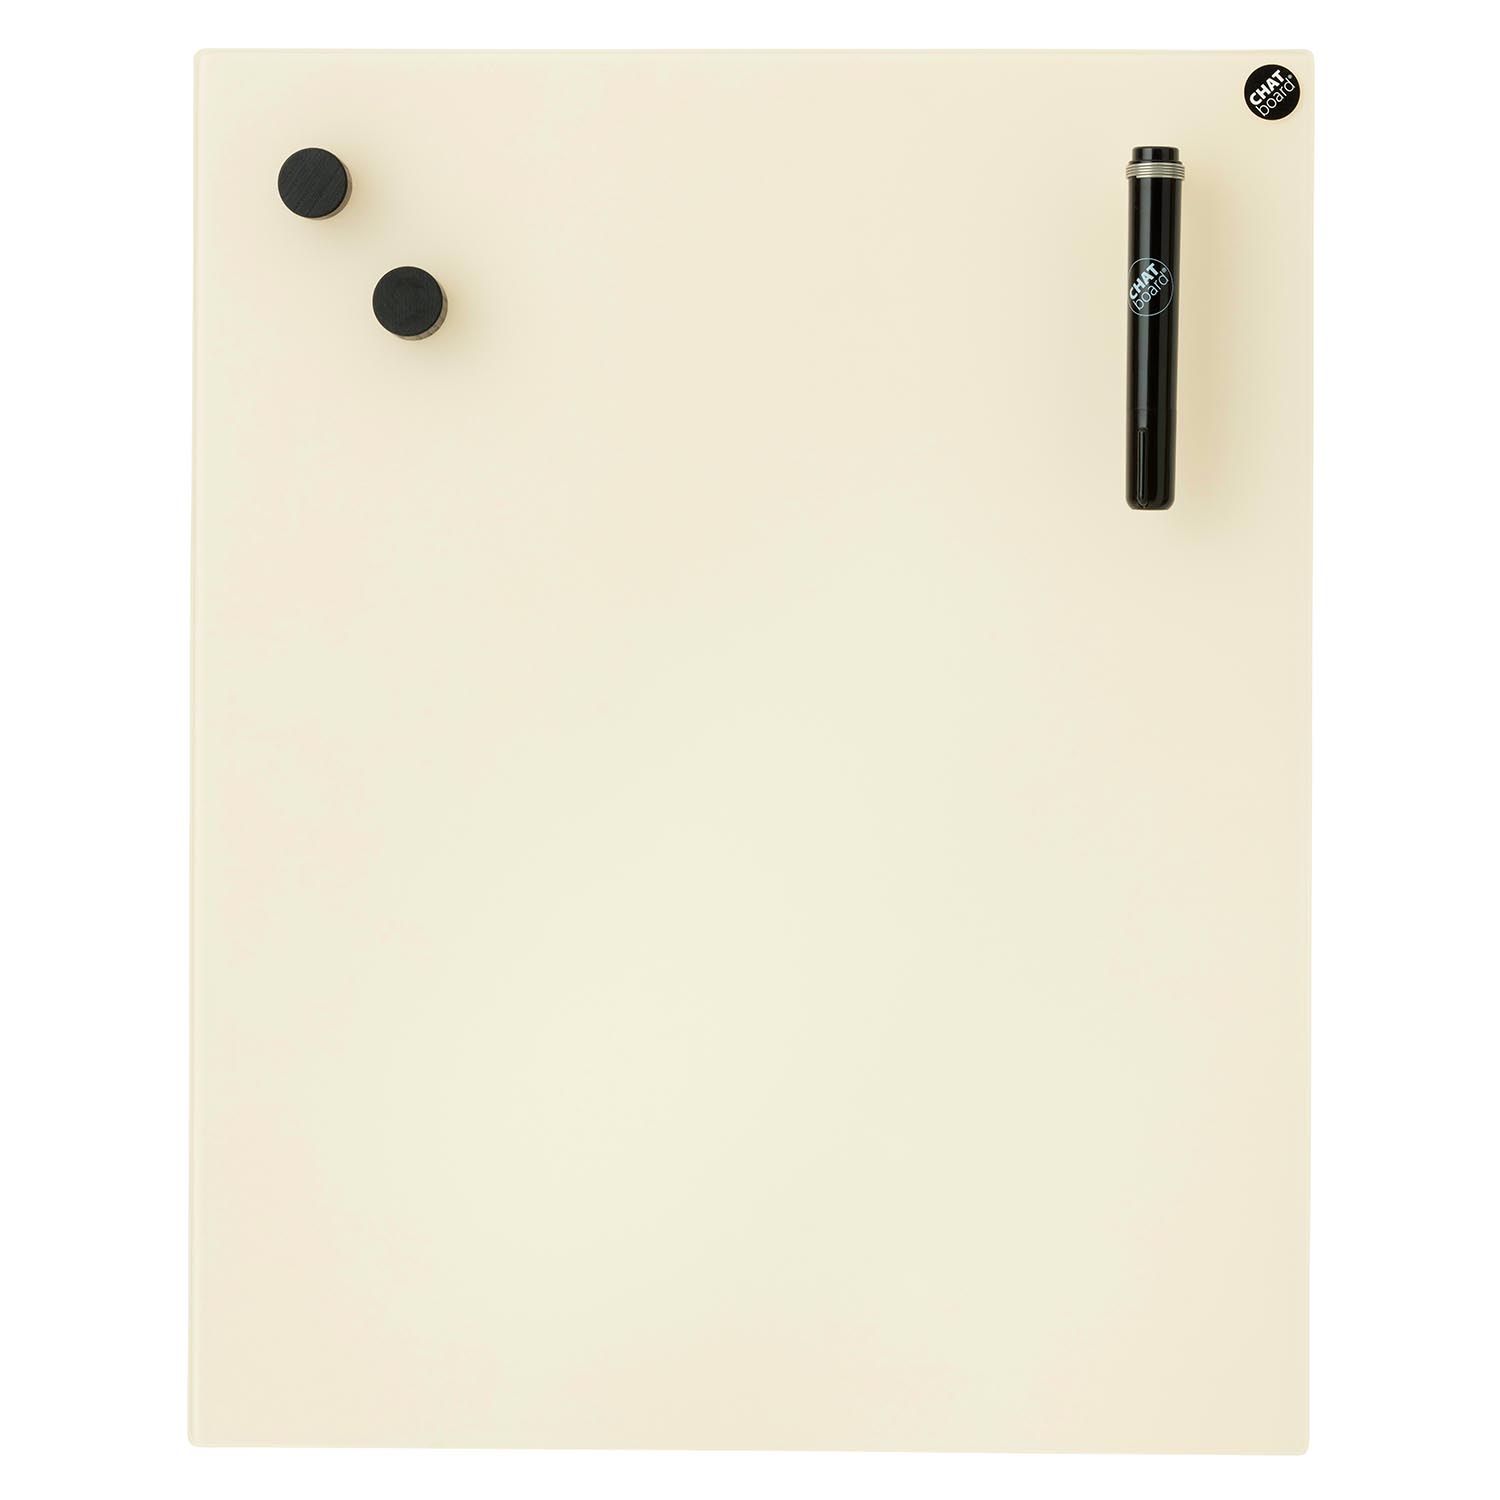 Classic Schreibtafel, Grösse 200 x 100 cm, Ausrichtung vertikal, Glas sky blue 39 mtsb von Chat Board